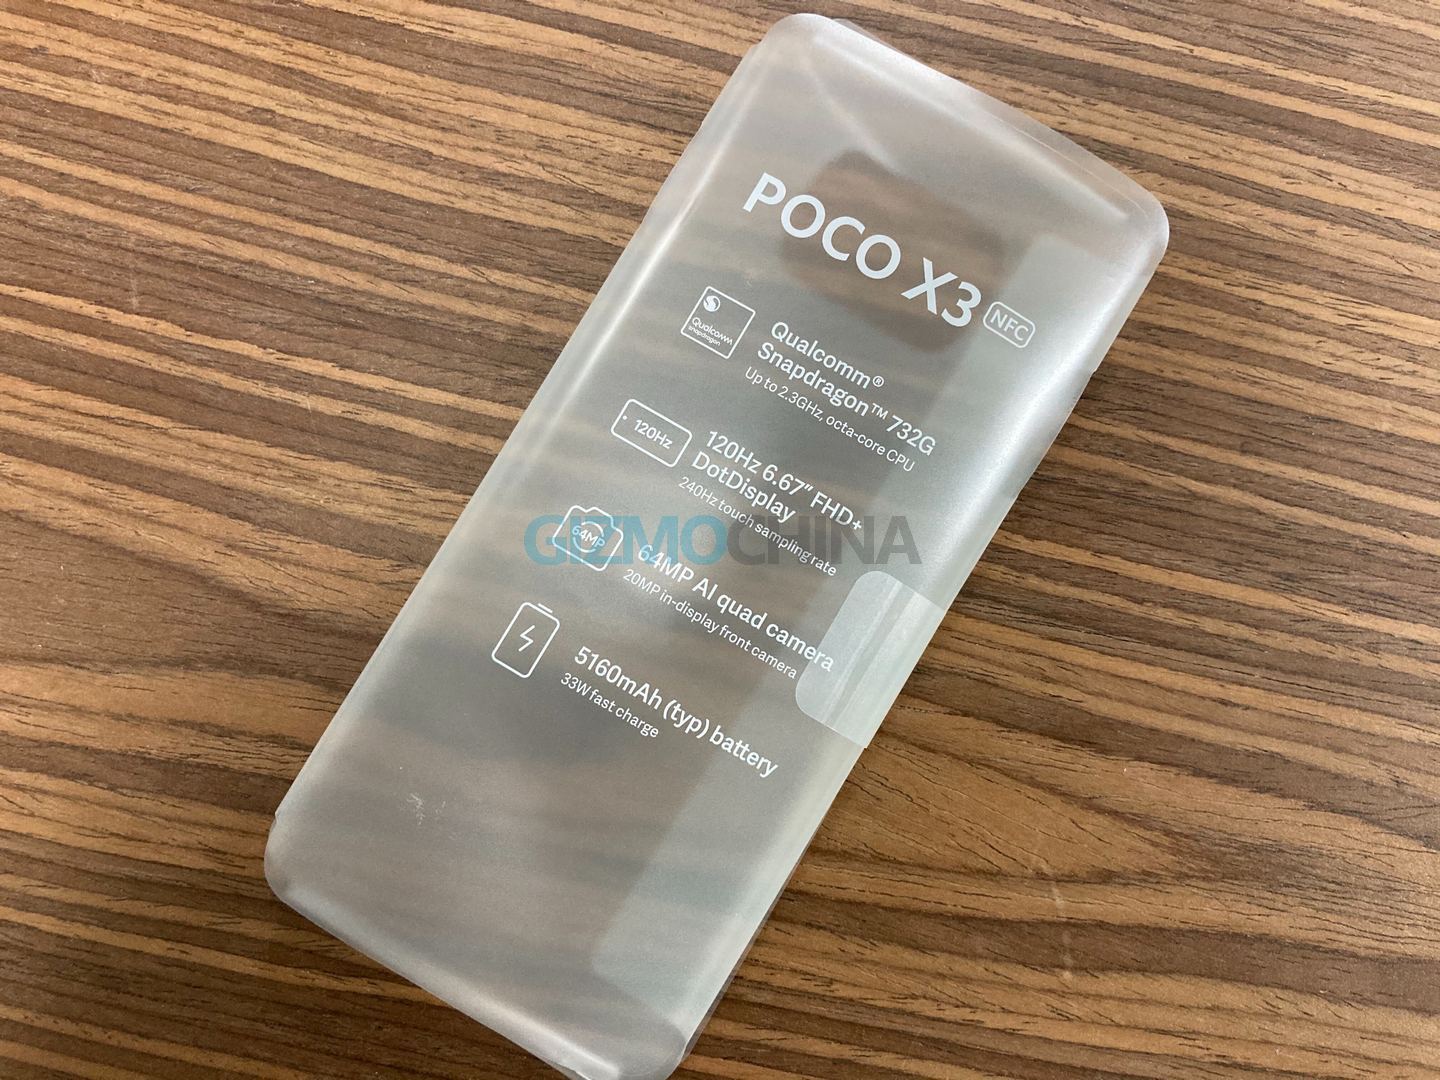 Poco X3 NFC Specs